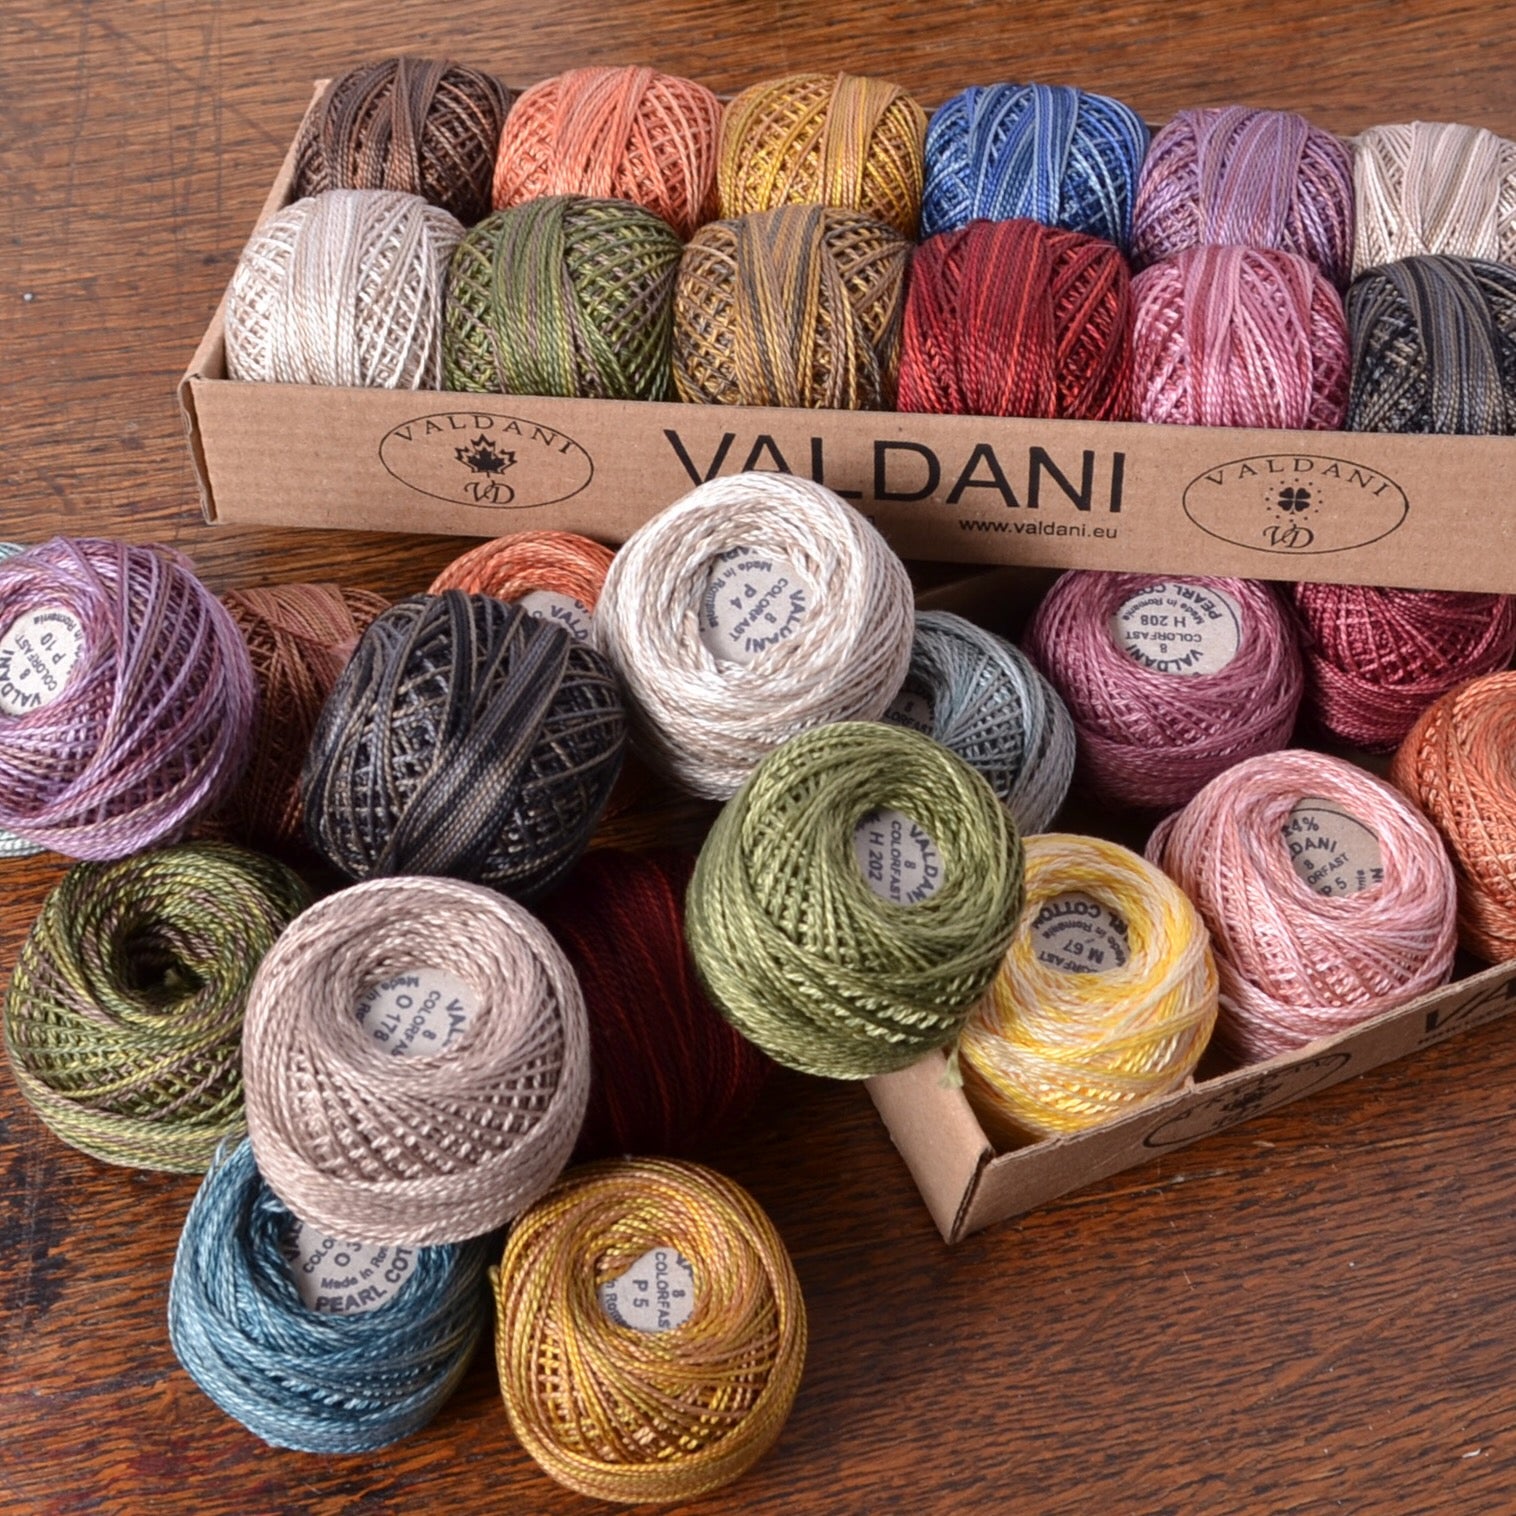 Valdani Perle Cotton Threads #8 size